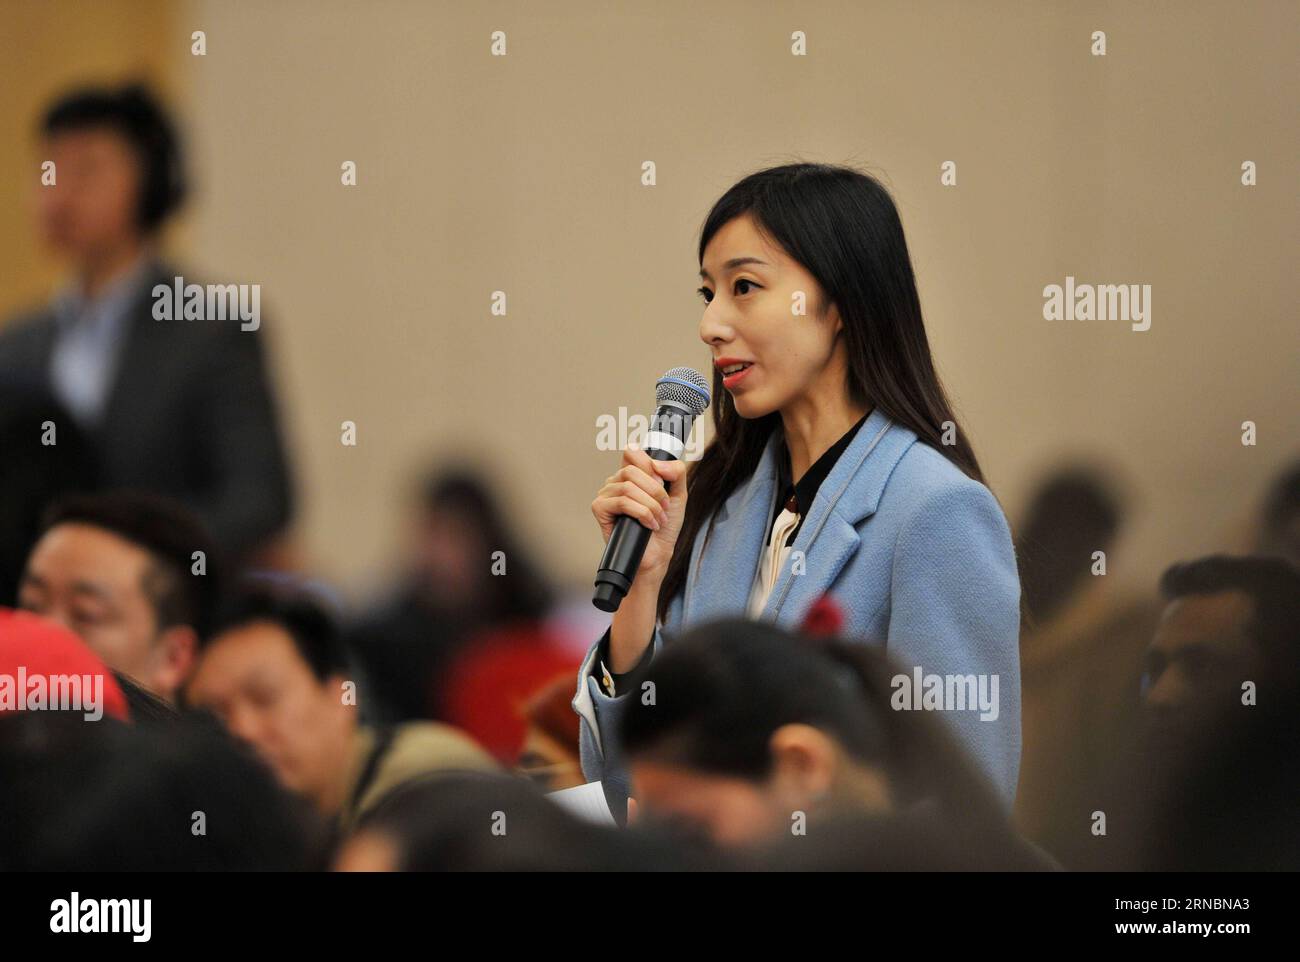 (160310) -- PEKING, 10. März 2016 -- Ein Journalist mit Qilu Evening News stellt Fragen während einer Pressekonferenz über den Fortschritt der Gesetzgebung am Rande der vierten Sitzung des 12. Nationalen Volkskongresses Chinas in Peking, der Hauptstadt Chinas, am 10. März 2016. )(mcg) (ZWEI SITZUNGEN)CHINA-BEIJING-NPC-PRESS CONFERENCE-LEGISLATION (CN) LixRenzi PUBLICATIONxNOTxINxCHN 160310 Peking 10. März 2016 ein Journalist mit Qilu Evening News stellt während einer Pressekonferenz Fragen über den Fortschritt der Gesetzgebung AN der Seite der vierten Sitzung des China S 12. National Celebrities S Kongresses in Stockfoto